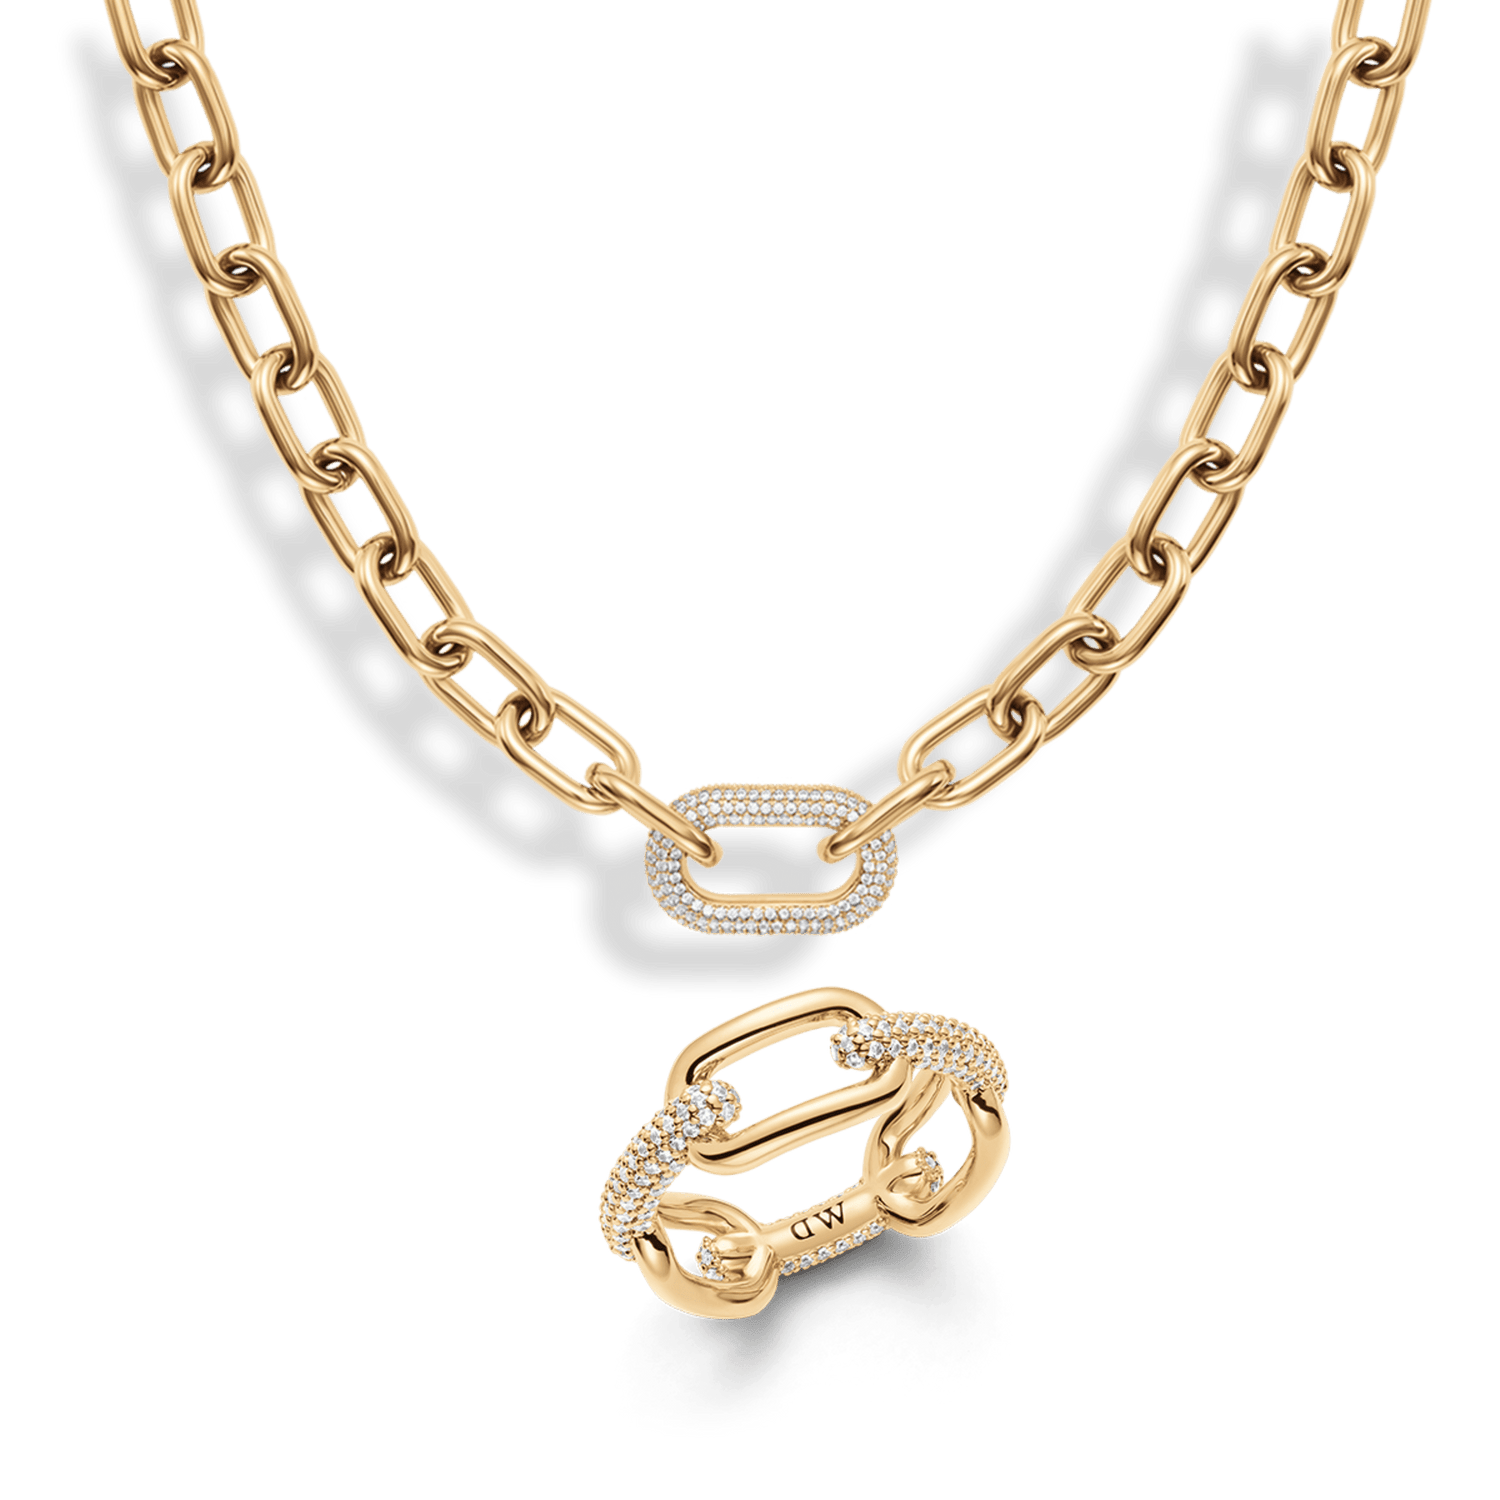 Crystal Link Ring, Necklace & Bracelet Gold